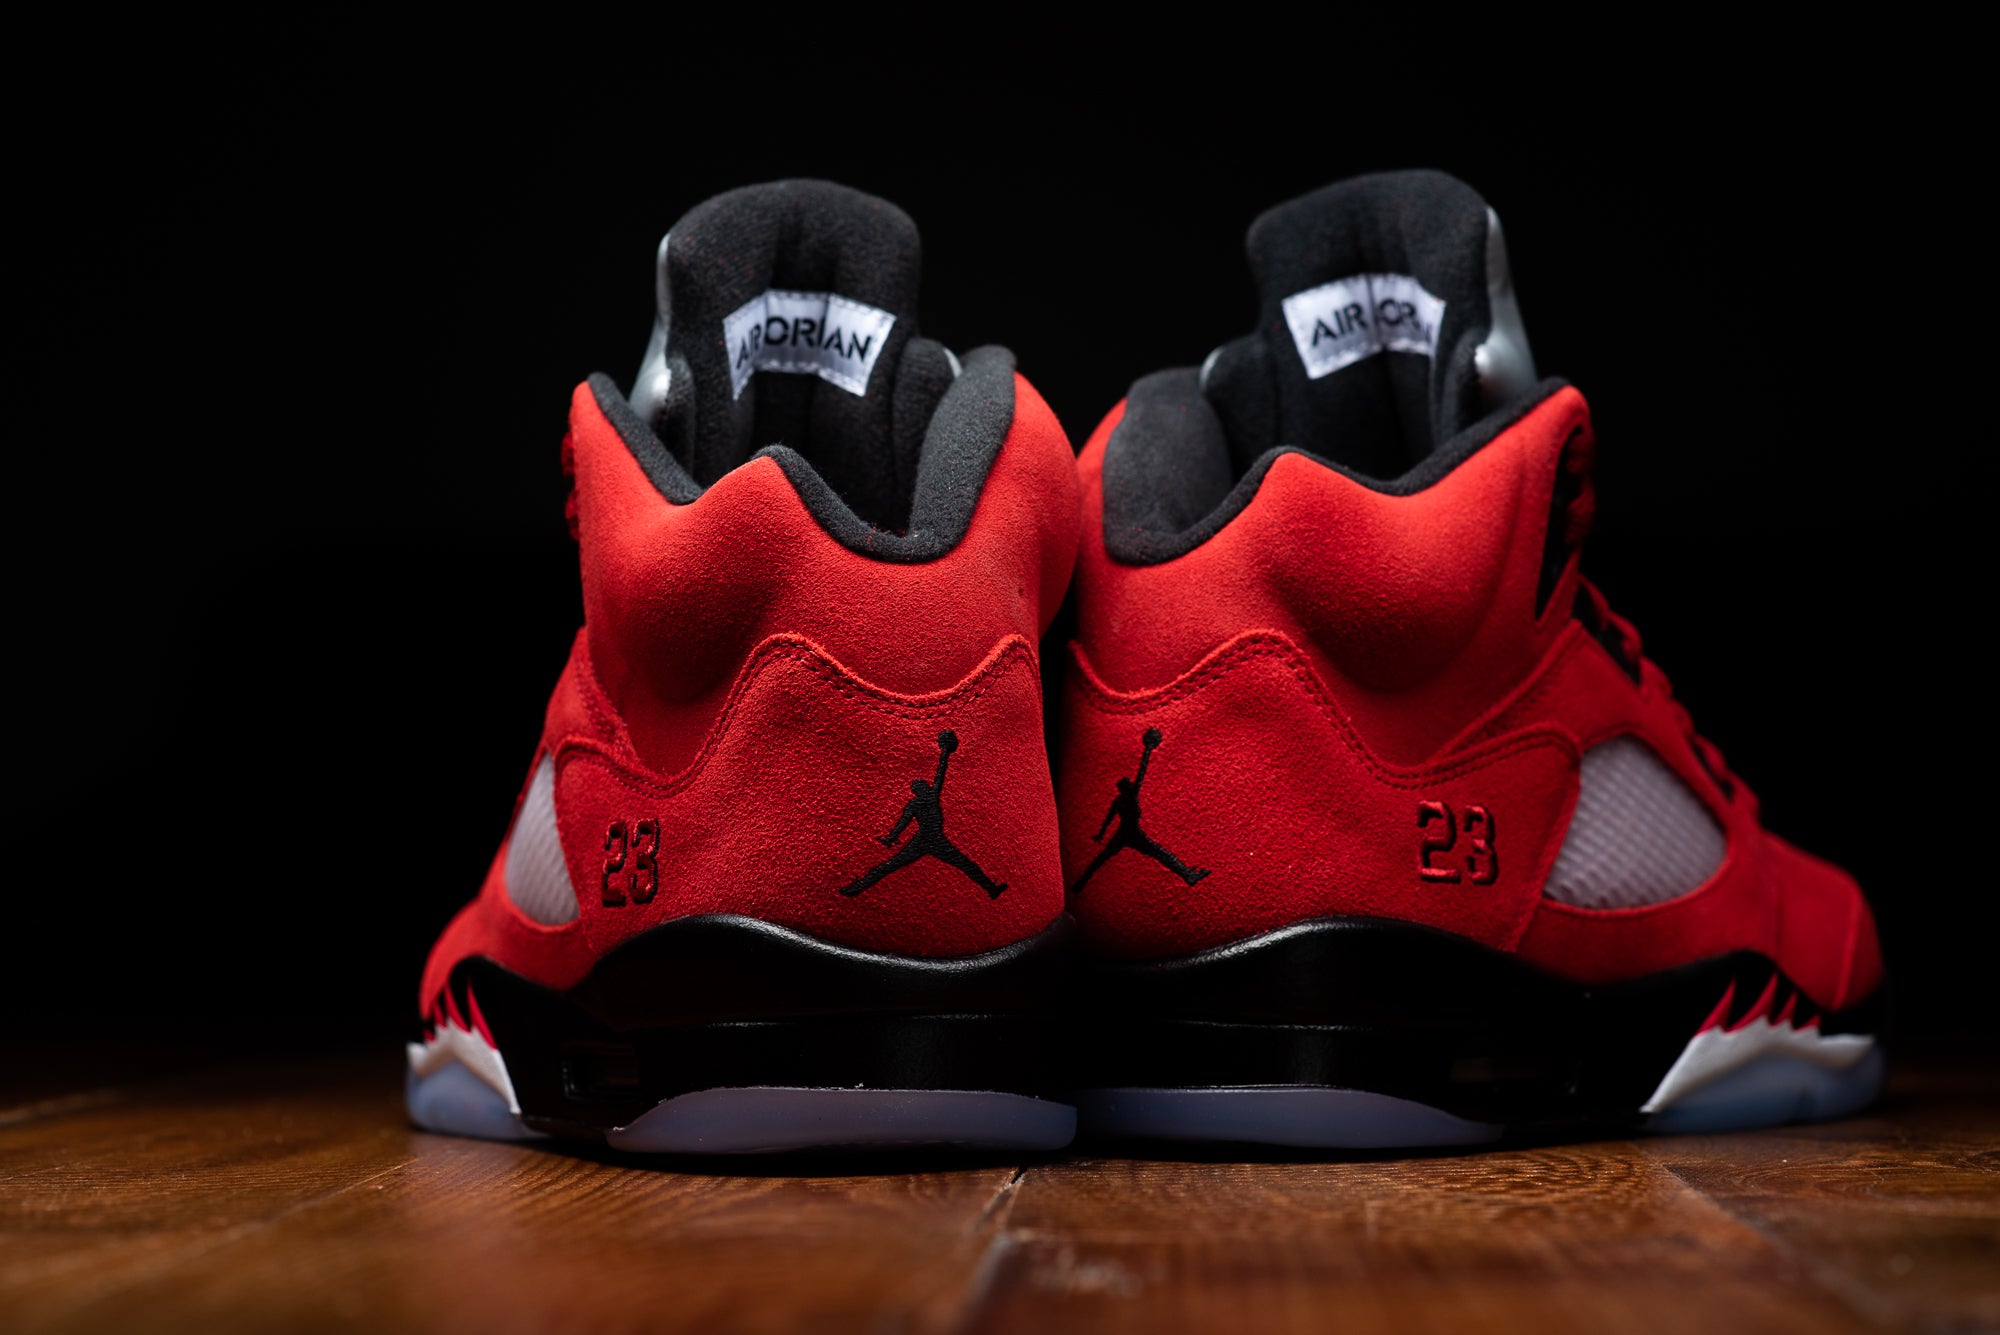 Air Jordan 5 Retro Premium 'Black' Release Date. Nike SNKRS